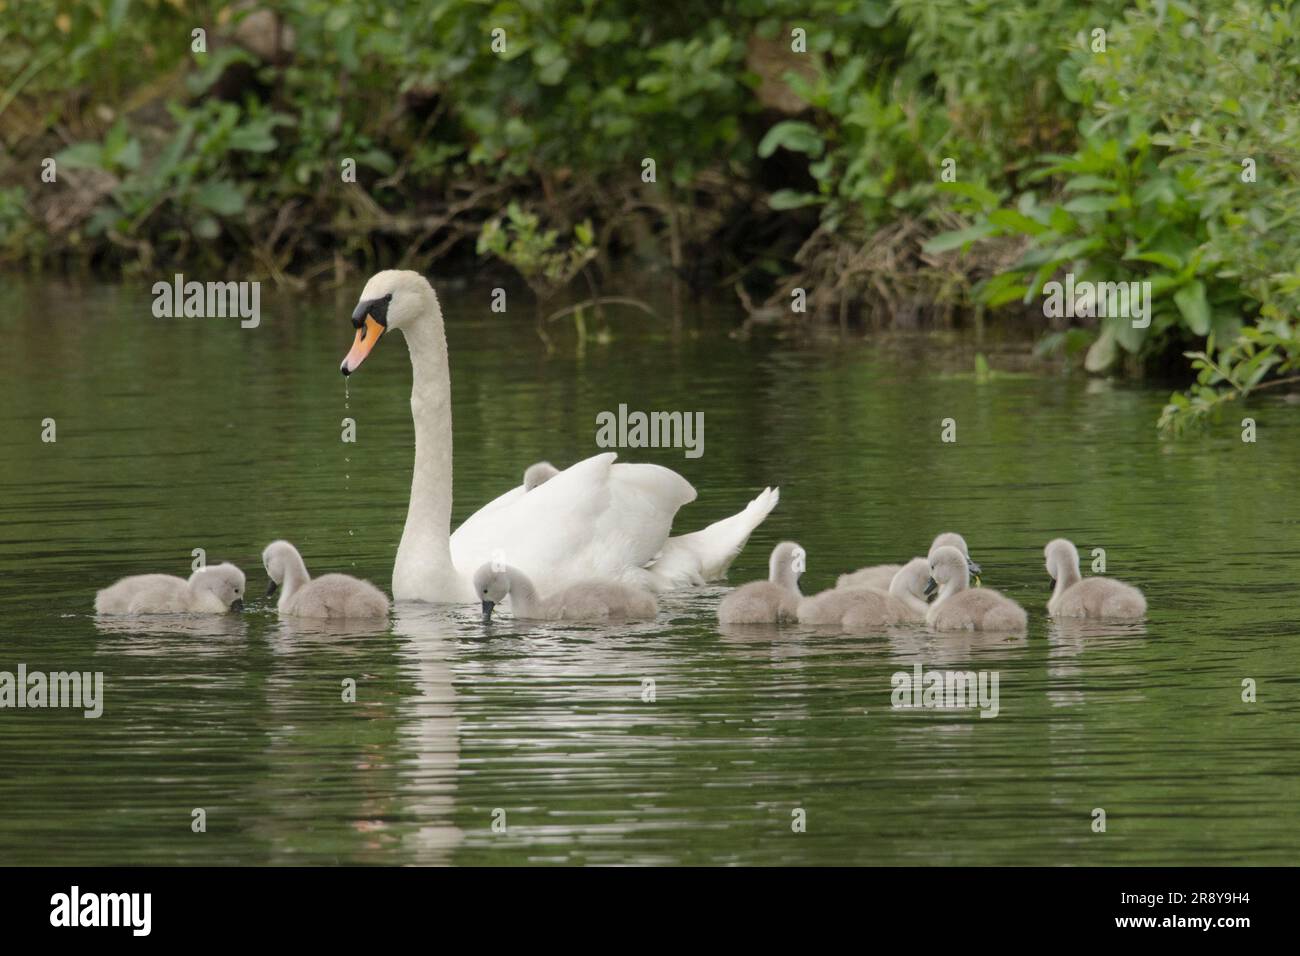 Mute Swan, Cygnus olor, avec neuf cygnes nageant sur River Bure, Norfolk Broads, juin Banque D'Images